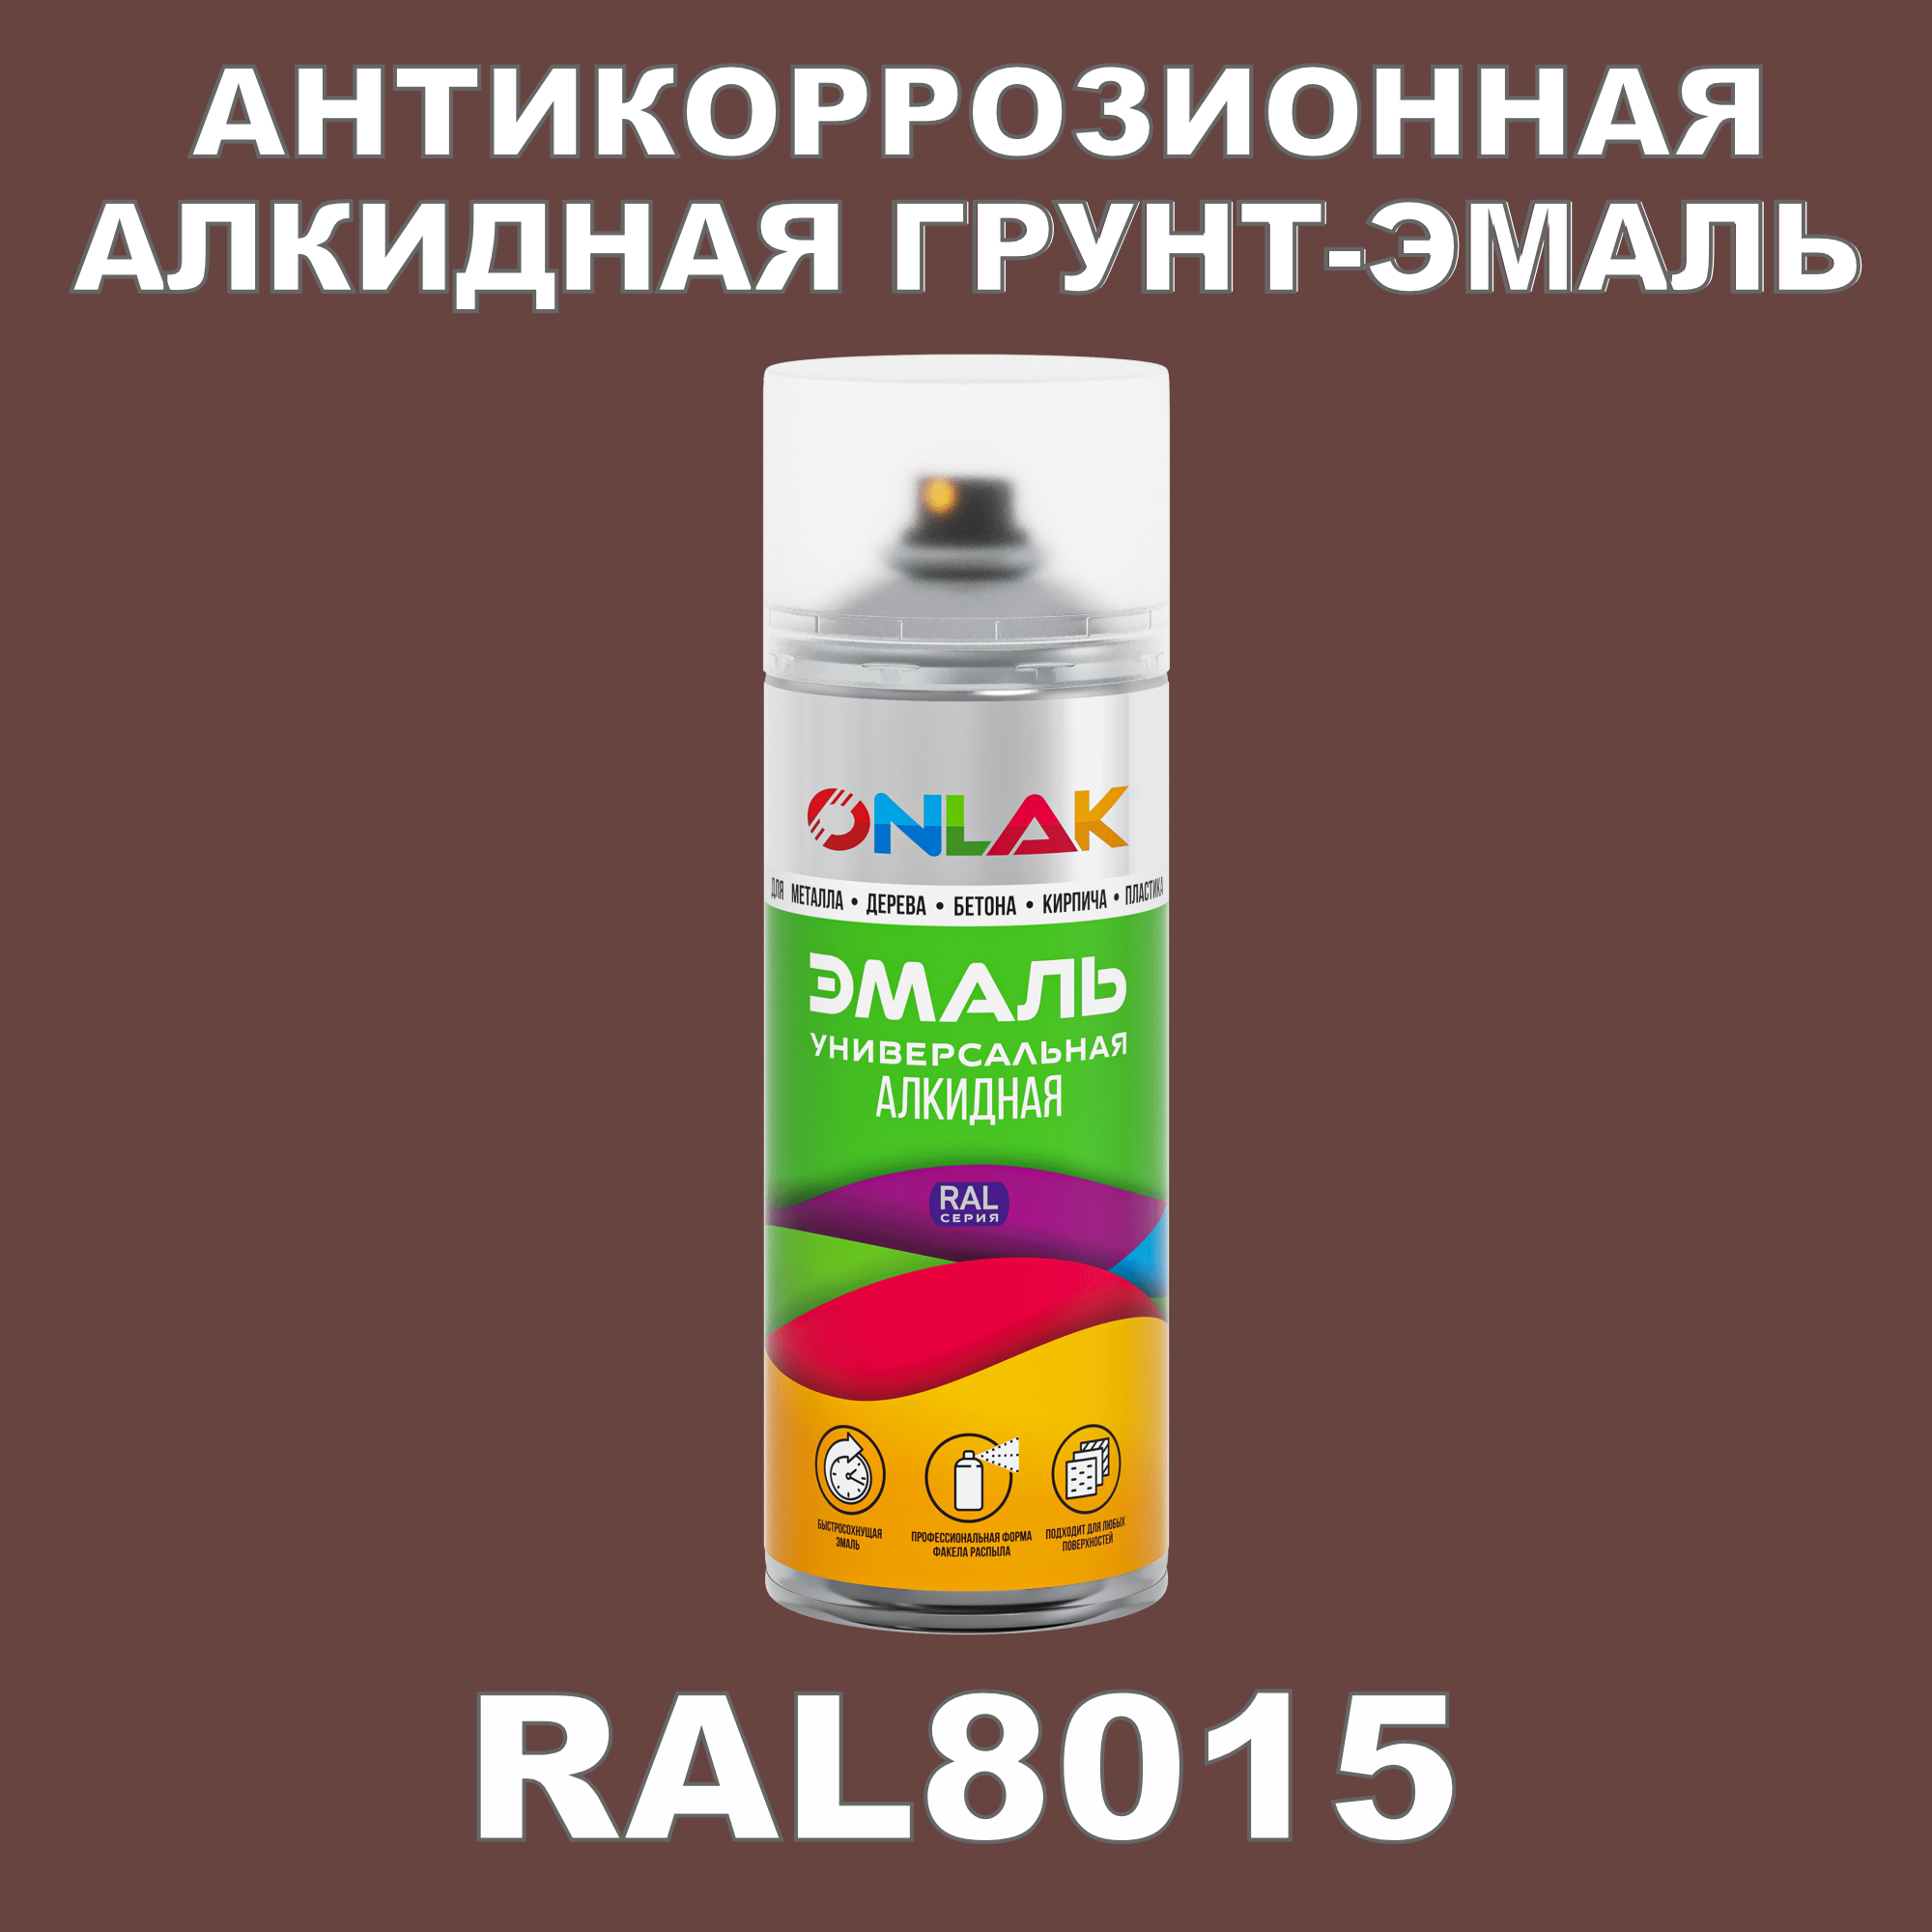 Антикоррозионная грунт-эмаль ONLAK RAL8015 полуматовая для металла и защиты от ржавчины